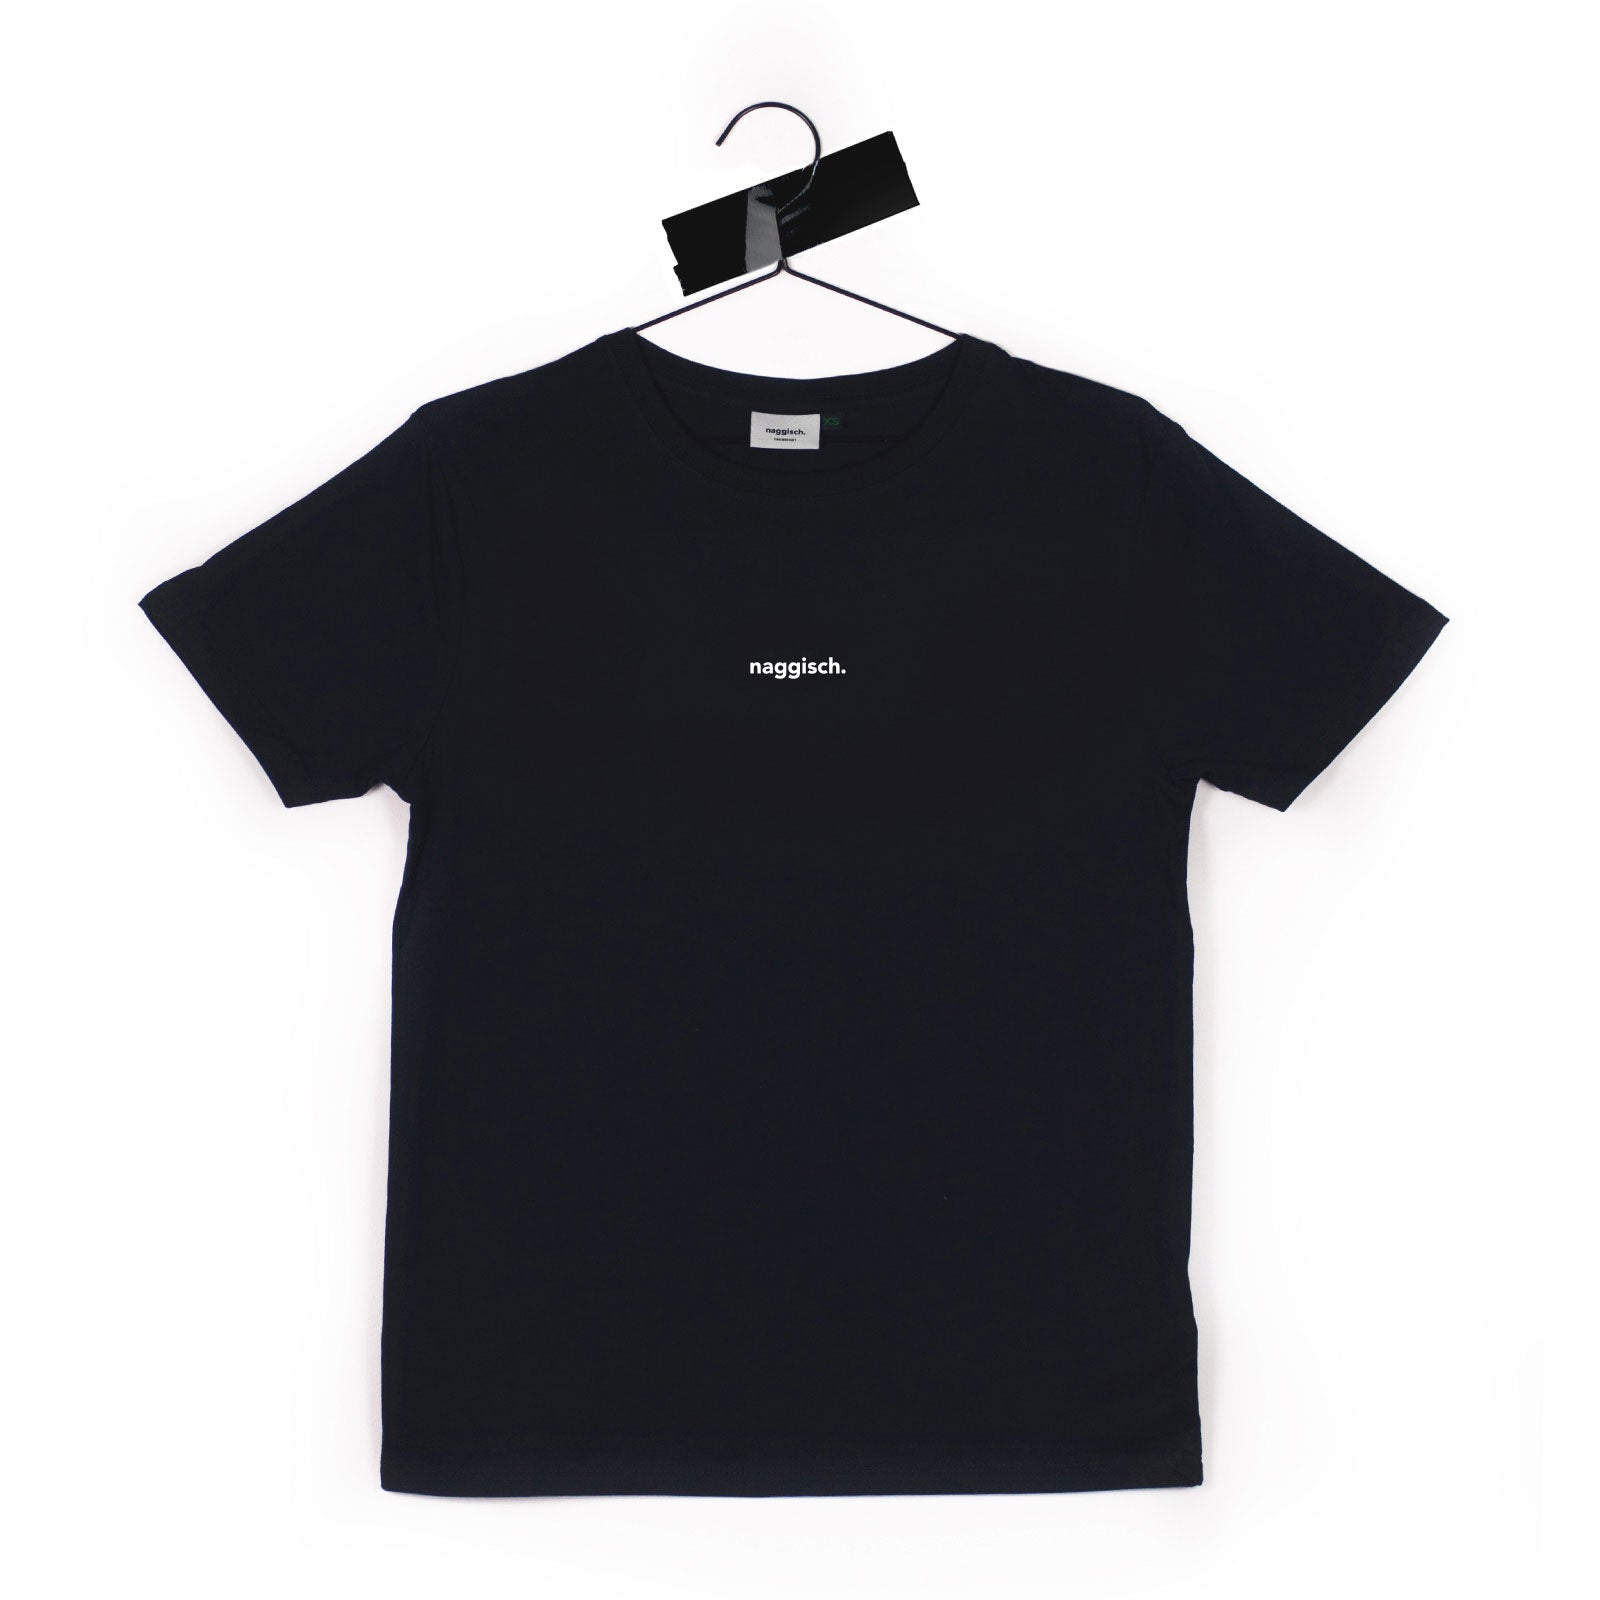 schwarzes T-Shirt weiß bedruckt mit naggisch